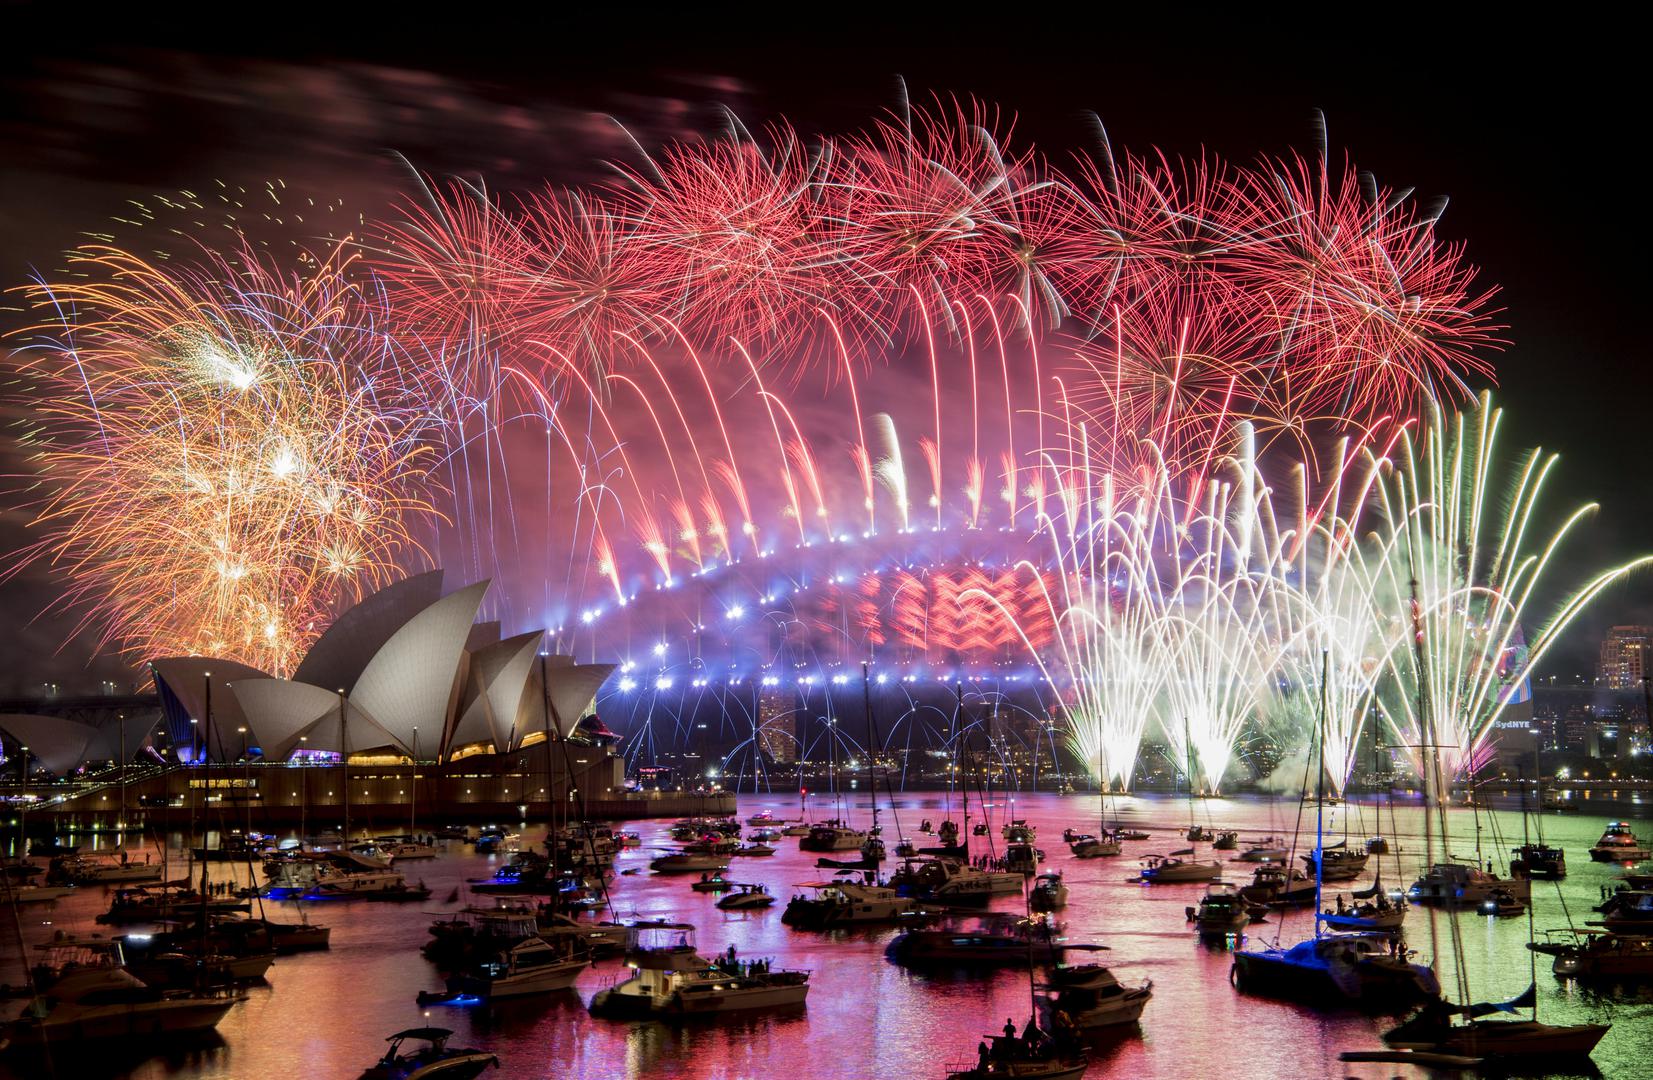 Večernja oluja iznad Sydneyja ipak se razišla na vrijeme i nije pokvarila raspoloženje za više od milijun slavljenika koji su u gradskoj luci uz spektakularan vatromet proslavili dolazak Nove godine.